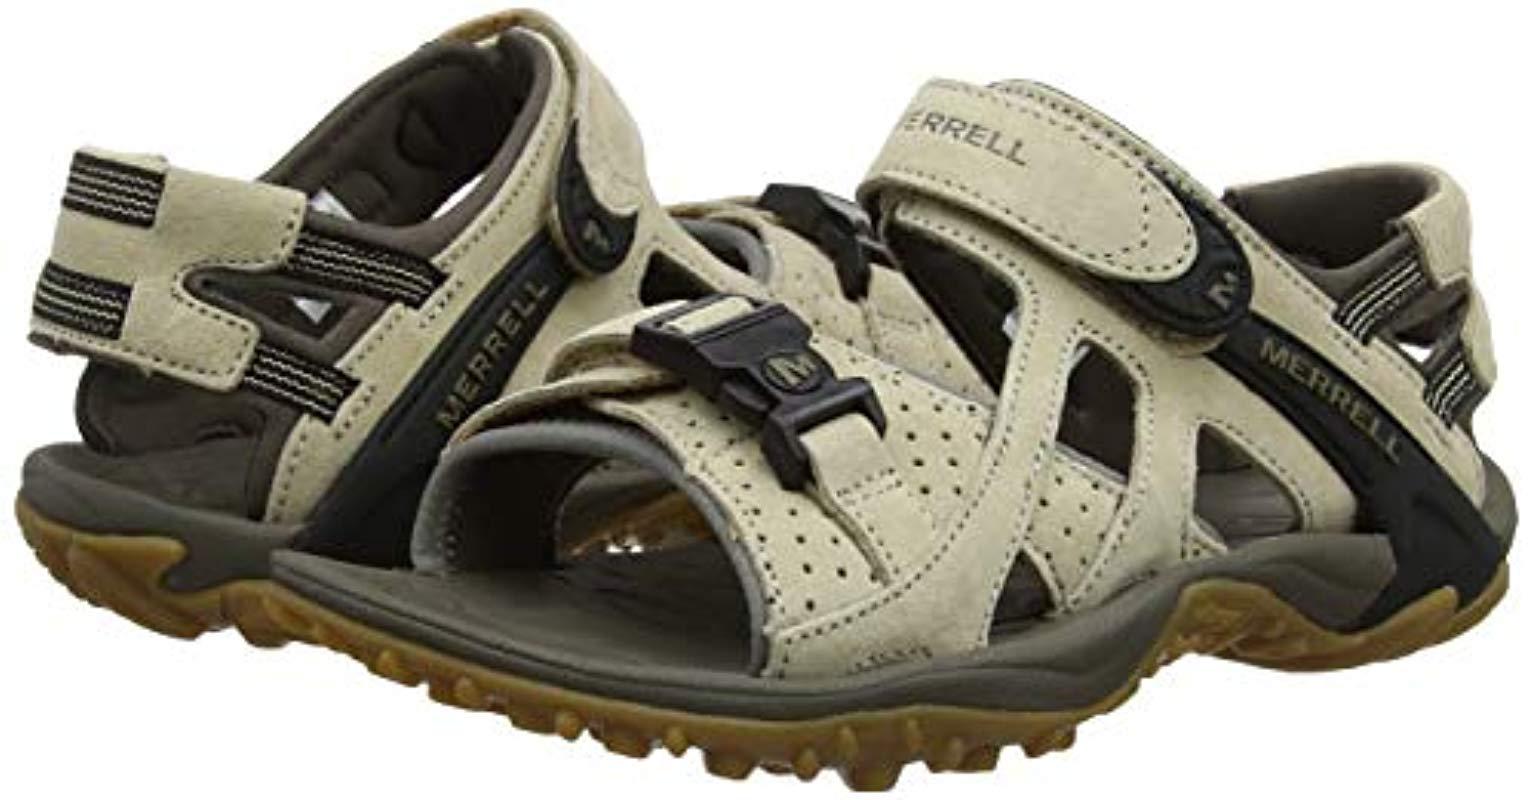 Merrell Sandals 2019 Sale Online, 57% OFF | www.vetyvet.com